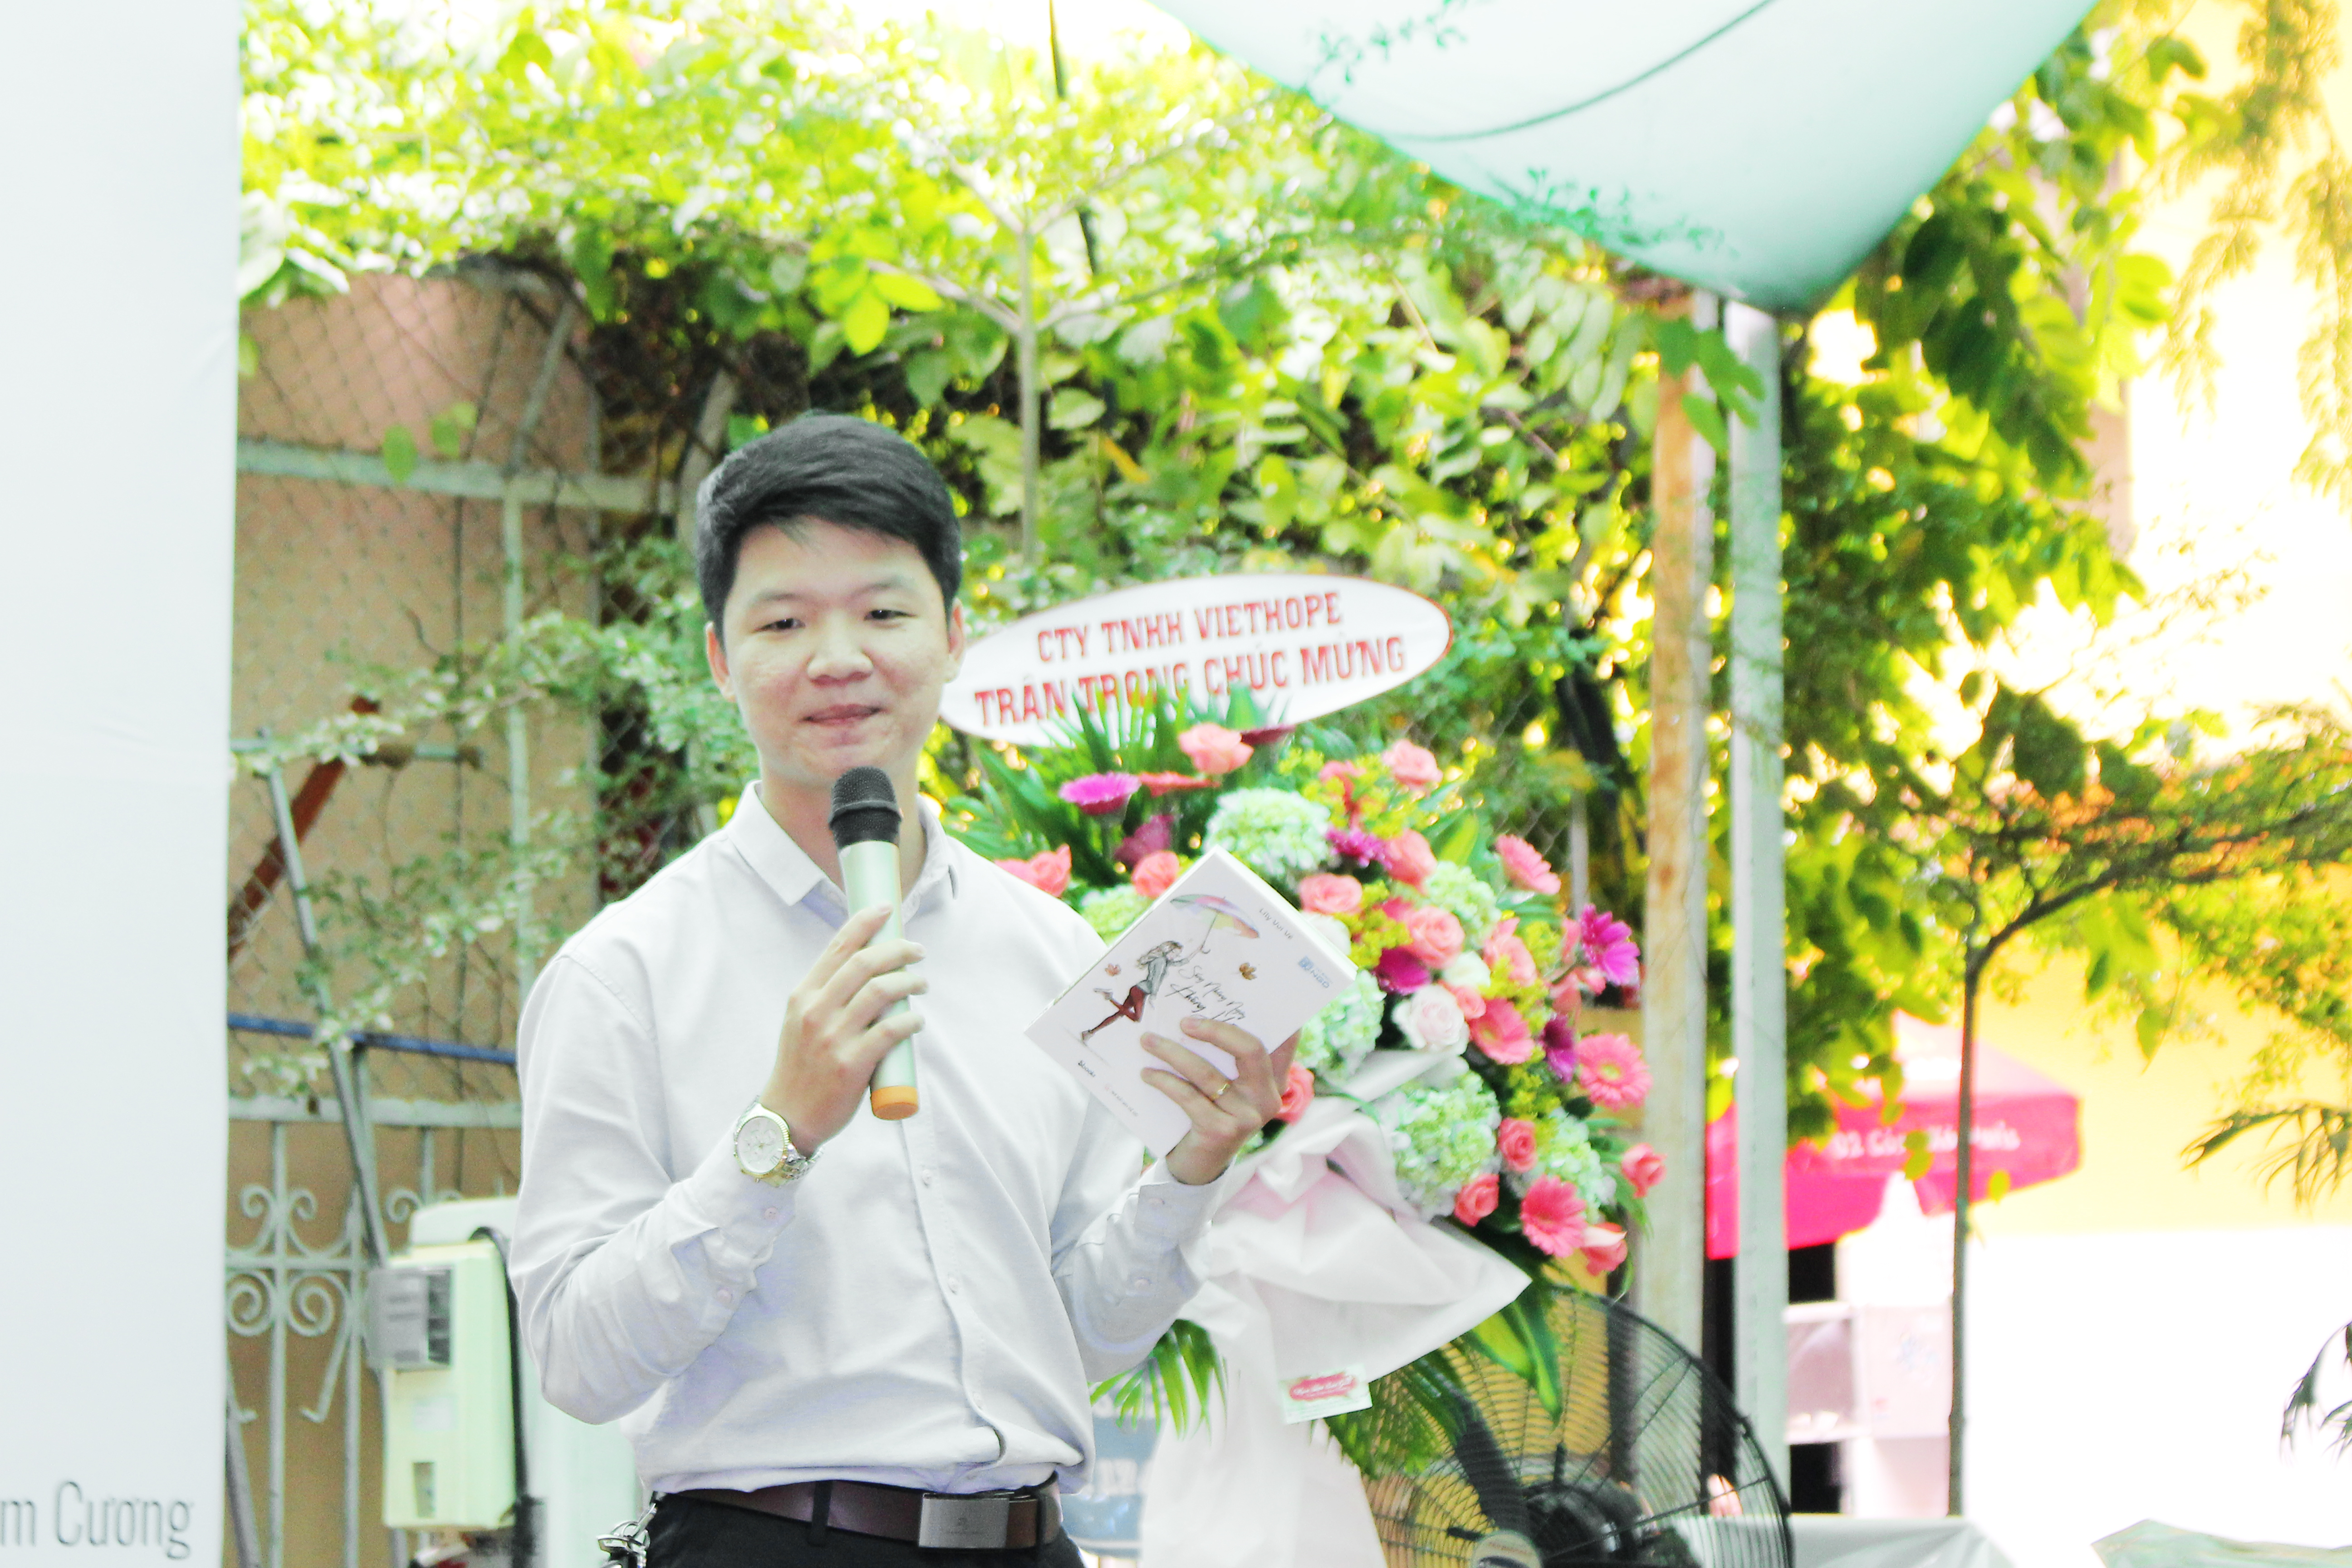 MC sự kiện – Anh Nguyễn Hoàng Sơn giới thiệu về cuốn sách Sống những ngày không hối tiếc